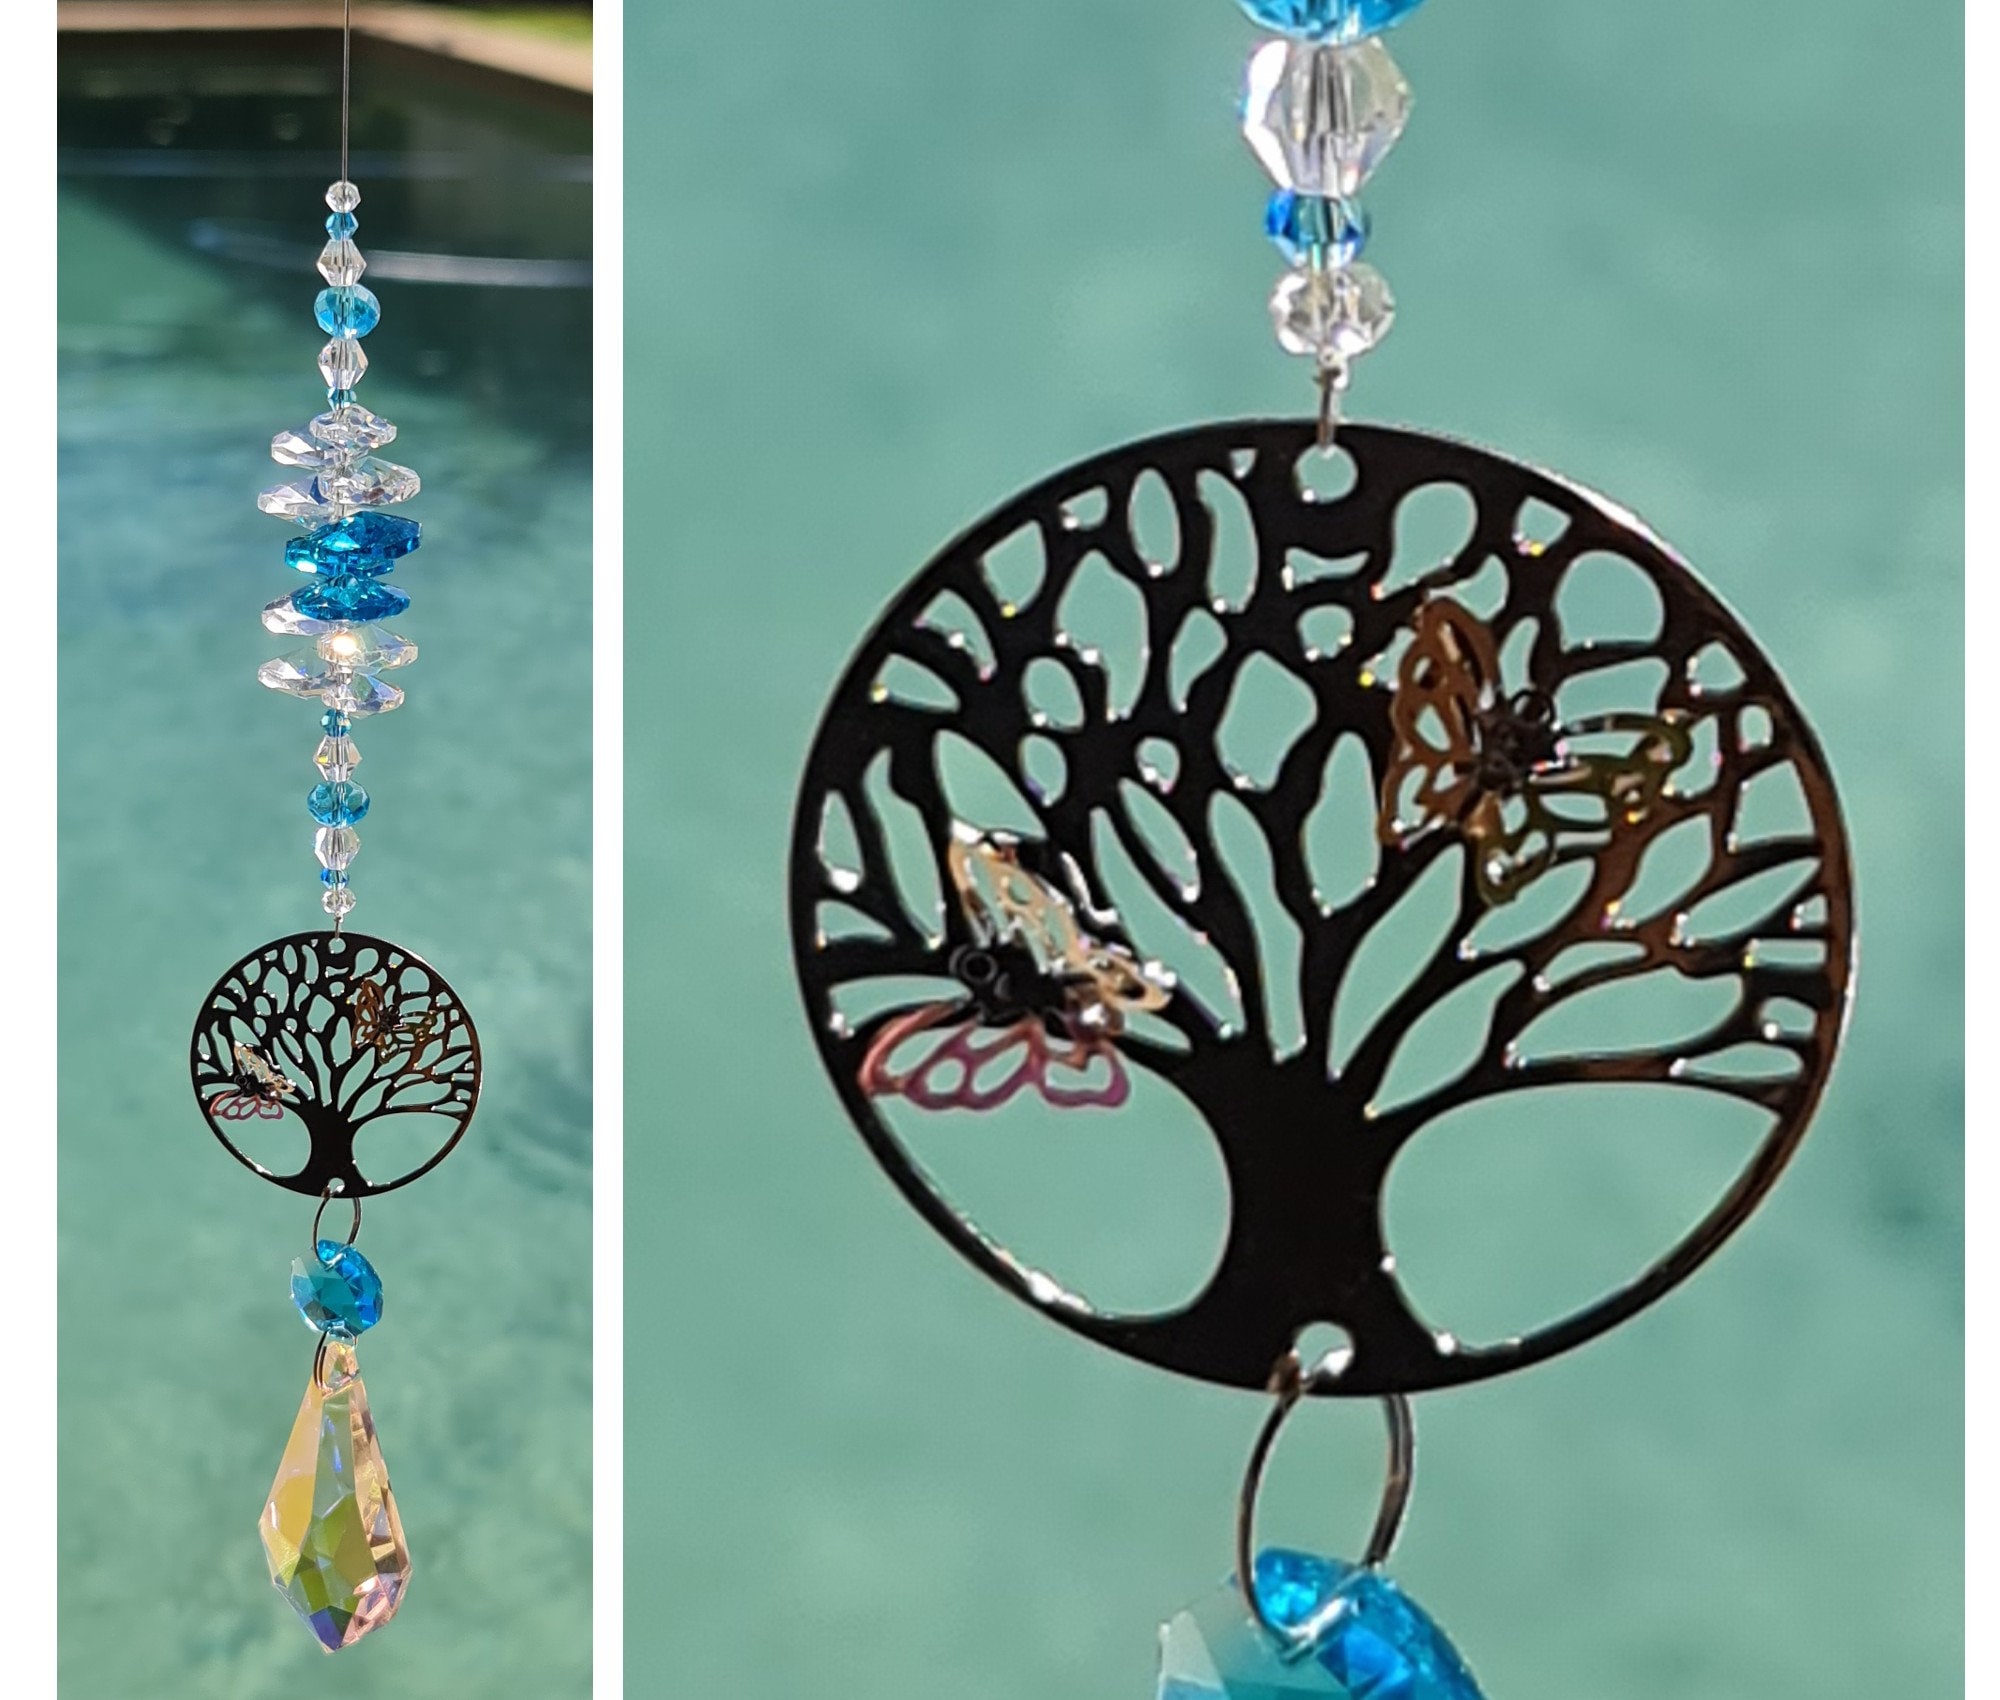 Handmade Suncatcher Blue Crystal Ball Clear Bead Rainbow Wedding Ornament Gifts 